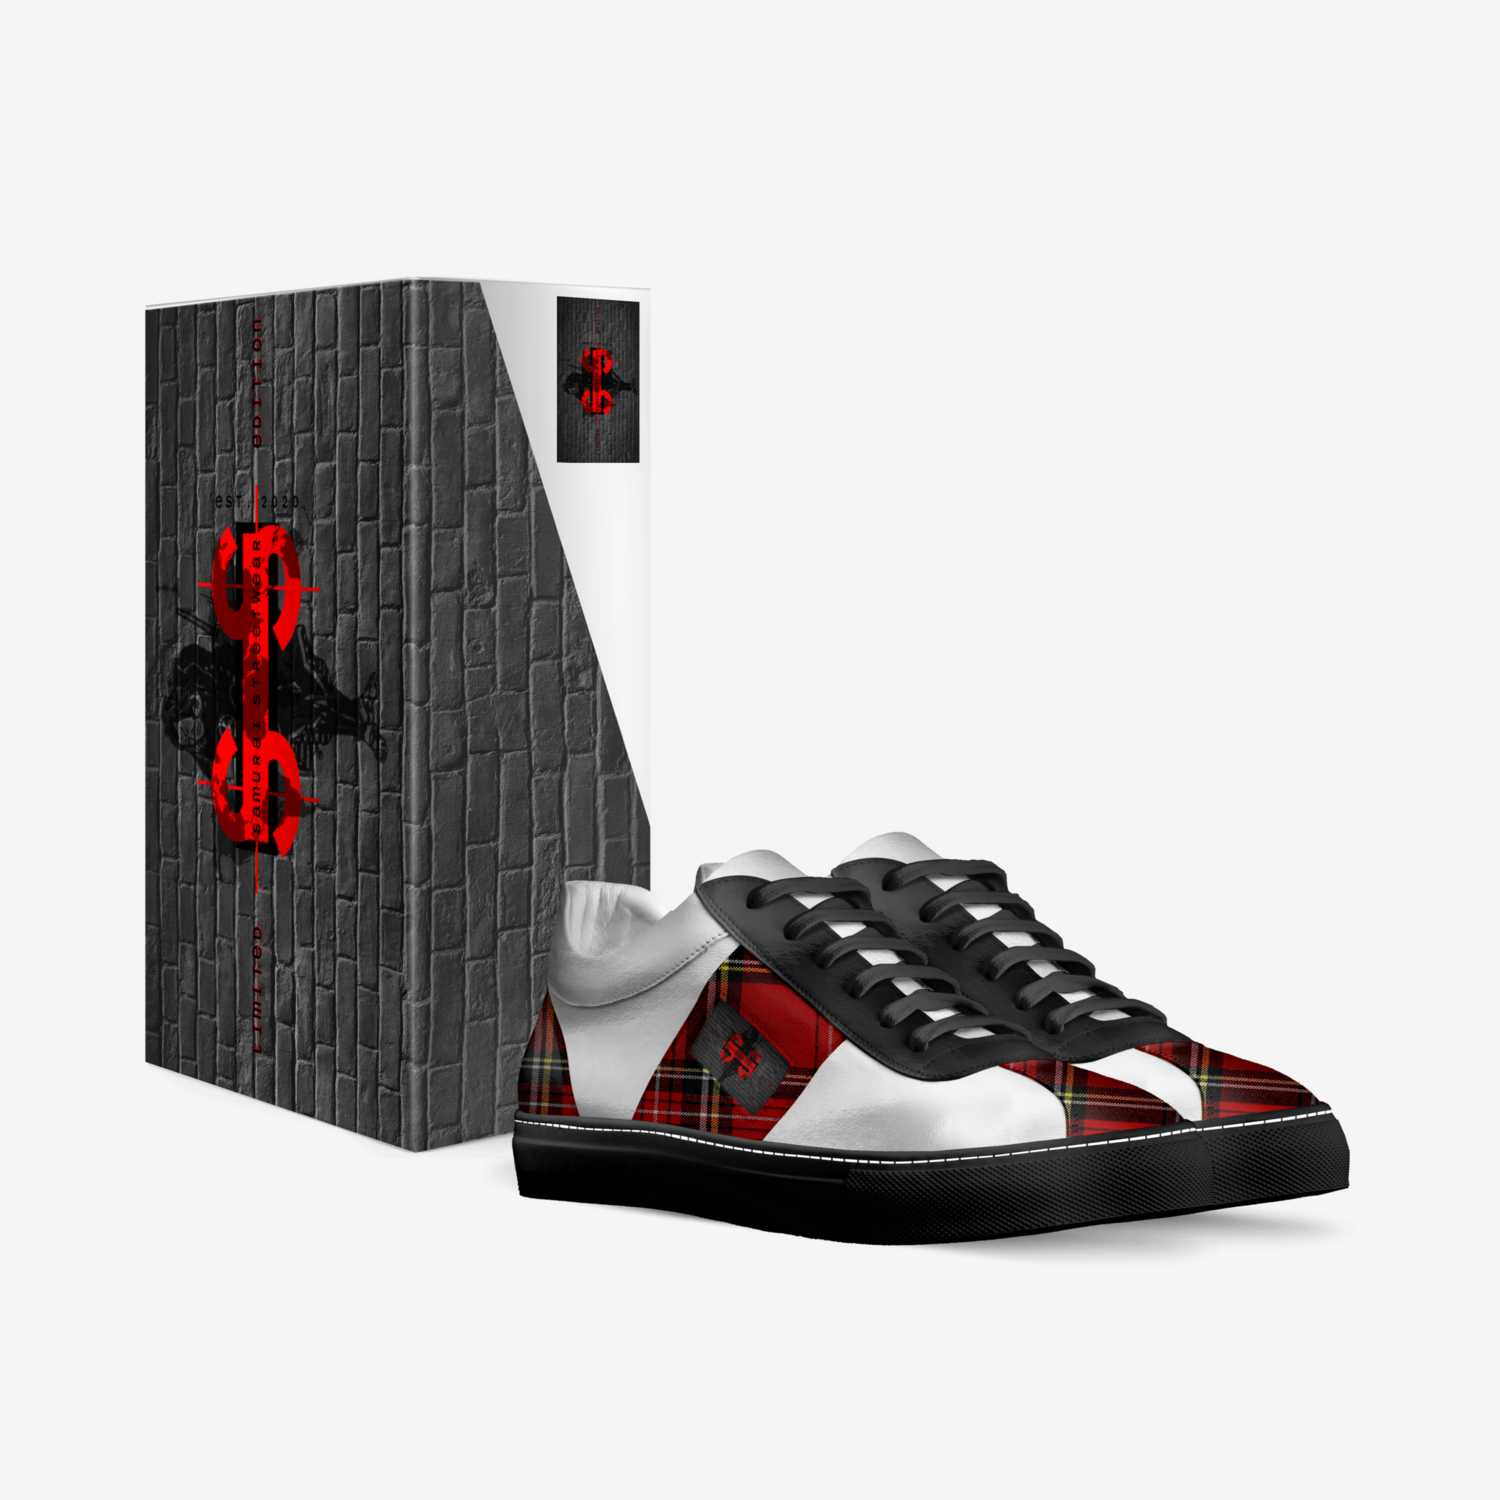 侍22 custom made in Italy shoes by Kevin Marron | Box view